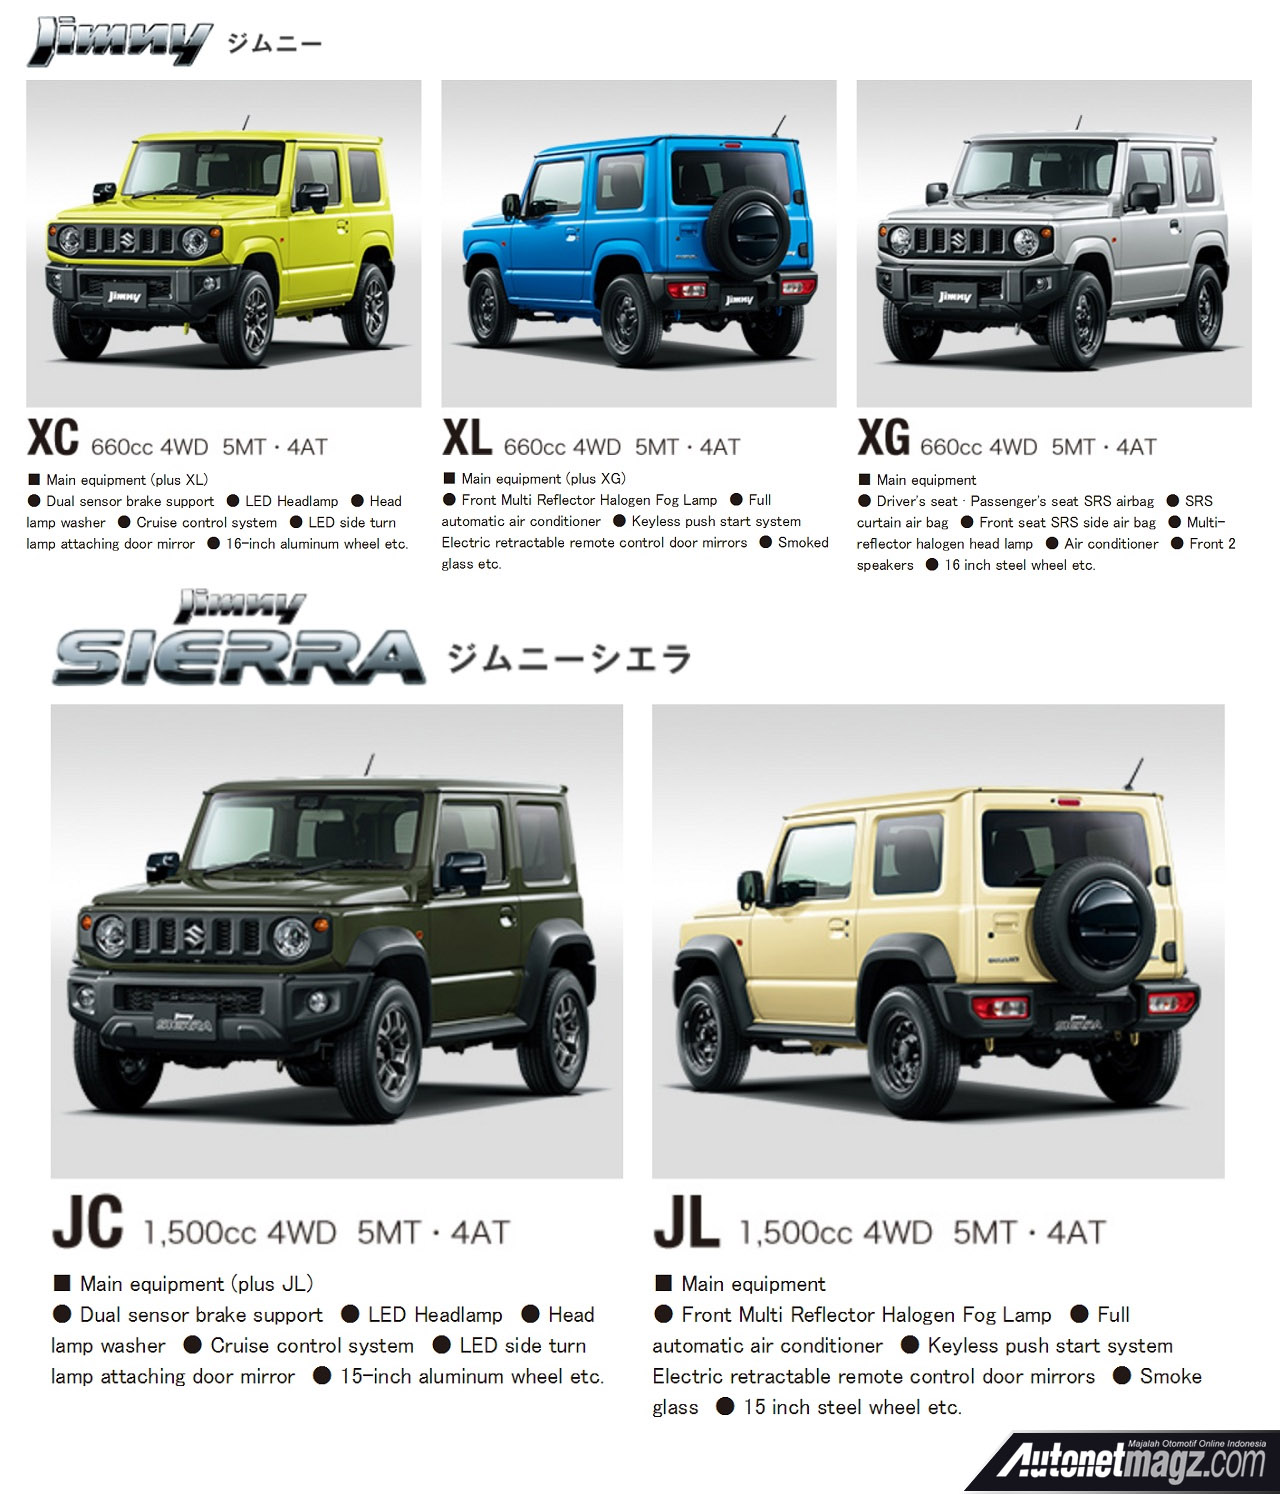 Berita, Fitur All New Suzuki Jimny & Jimny Sierra: Spesifikasi All New Suzuki Jimny & Jimny Sierra Terkuak!